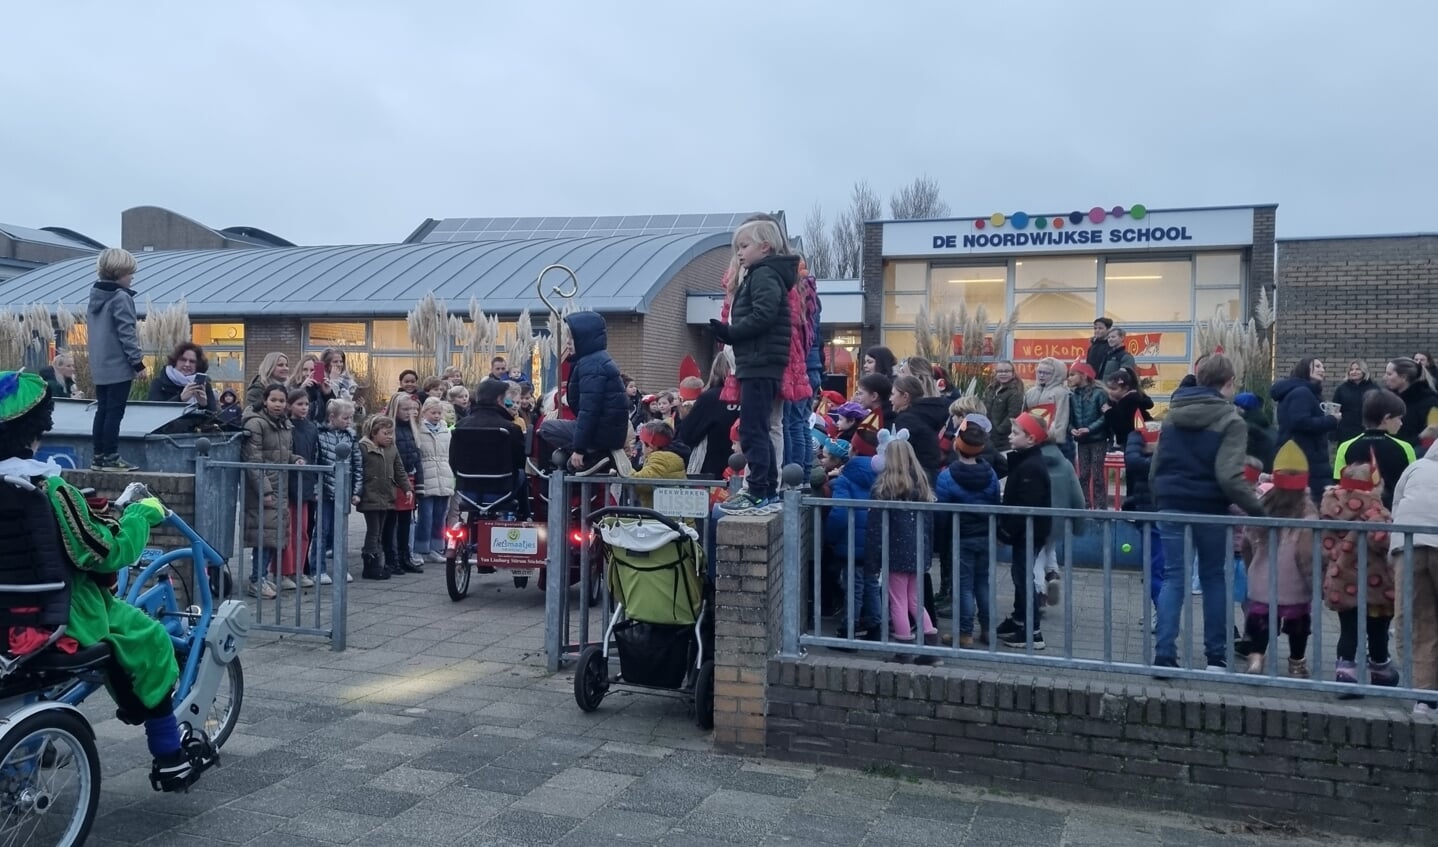 Vandaag stond het schoolplein van 'De Noordwijkse' vol om Sint en zijn Pieten te verwelkomen.  